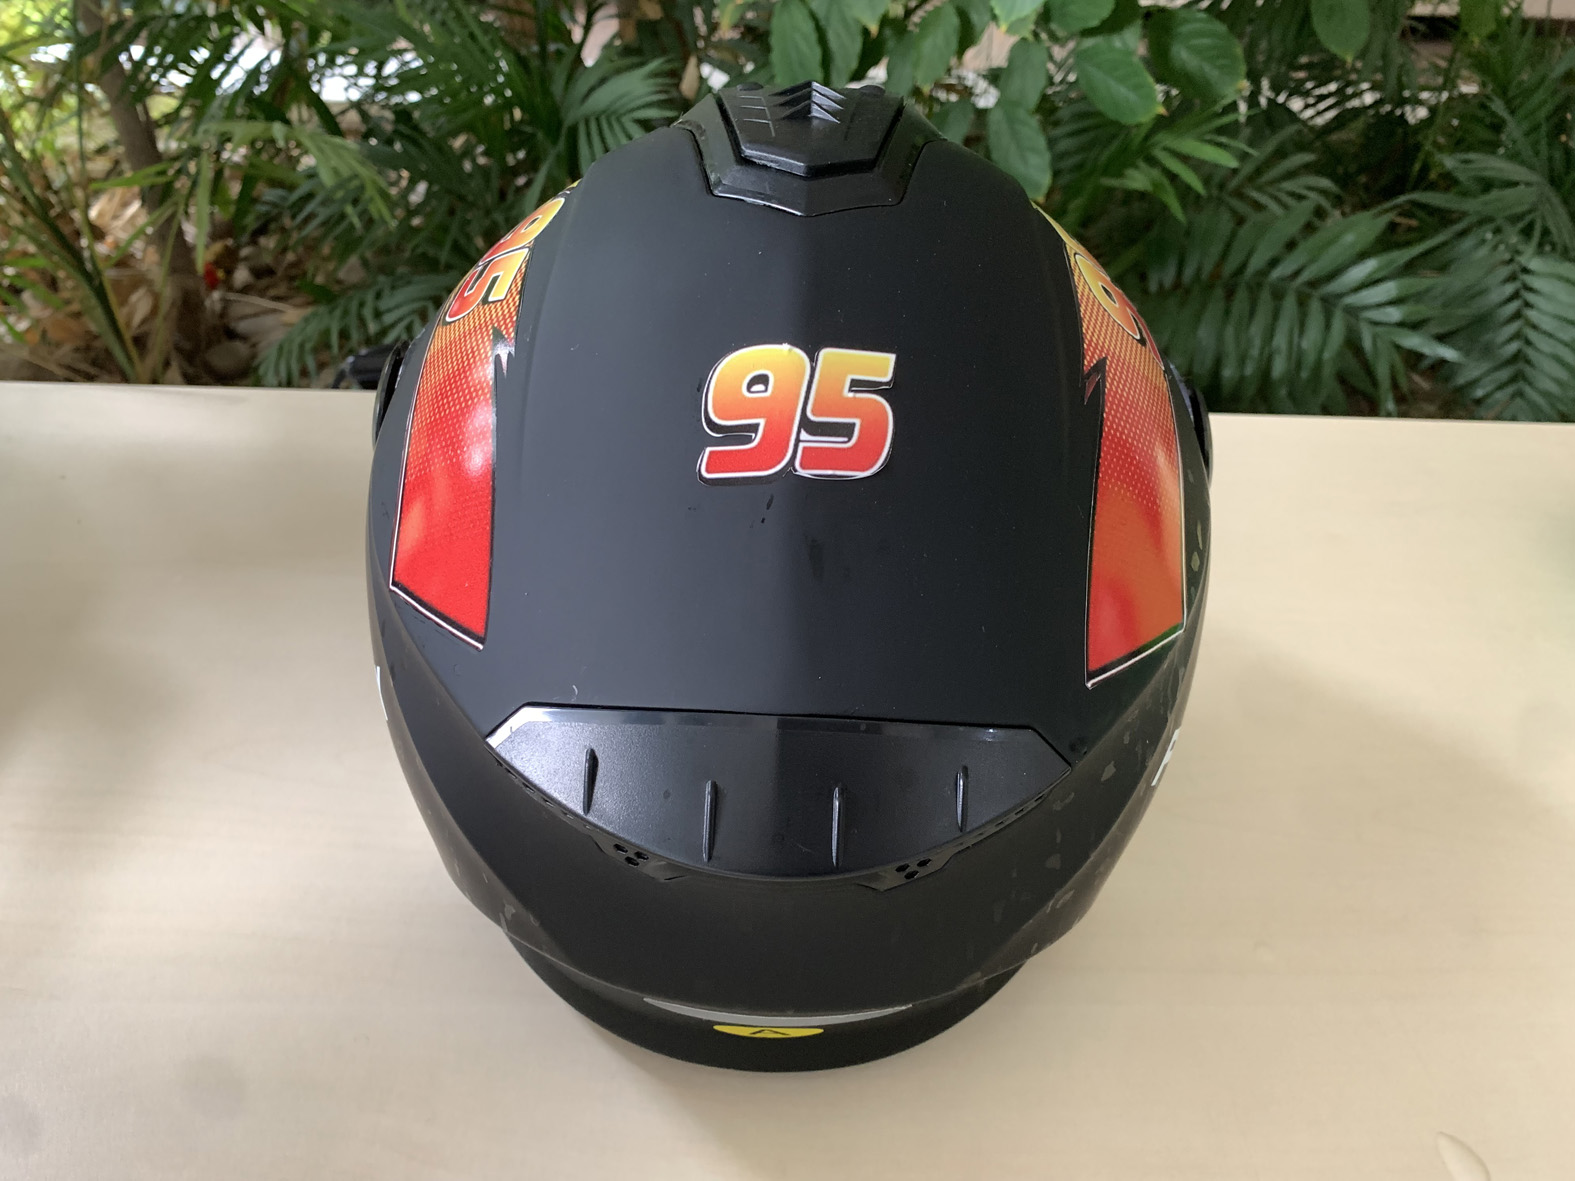 水转印标贴膜 WSD-300S（弱溶剂墨水打印）用于深色头盔的水转移印